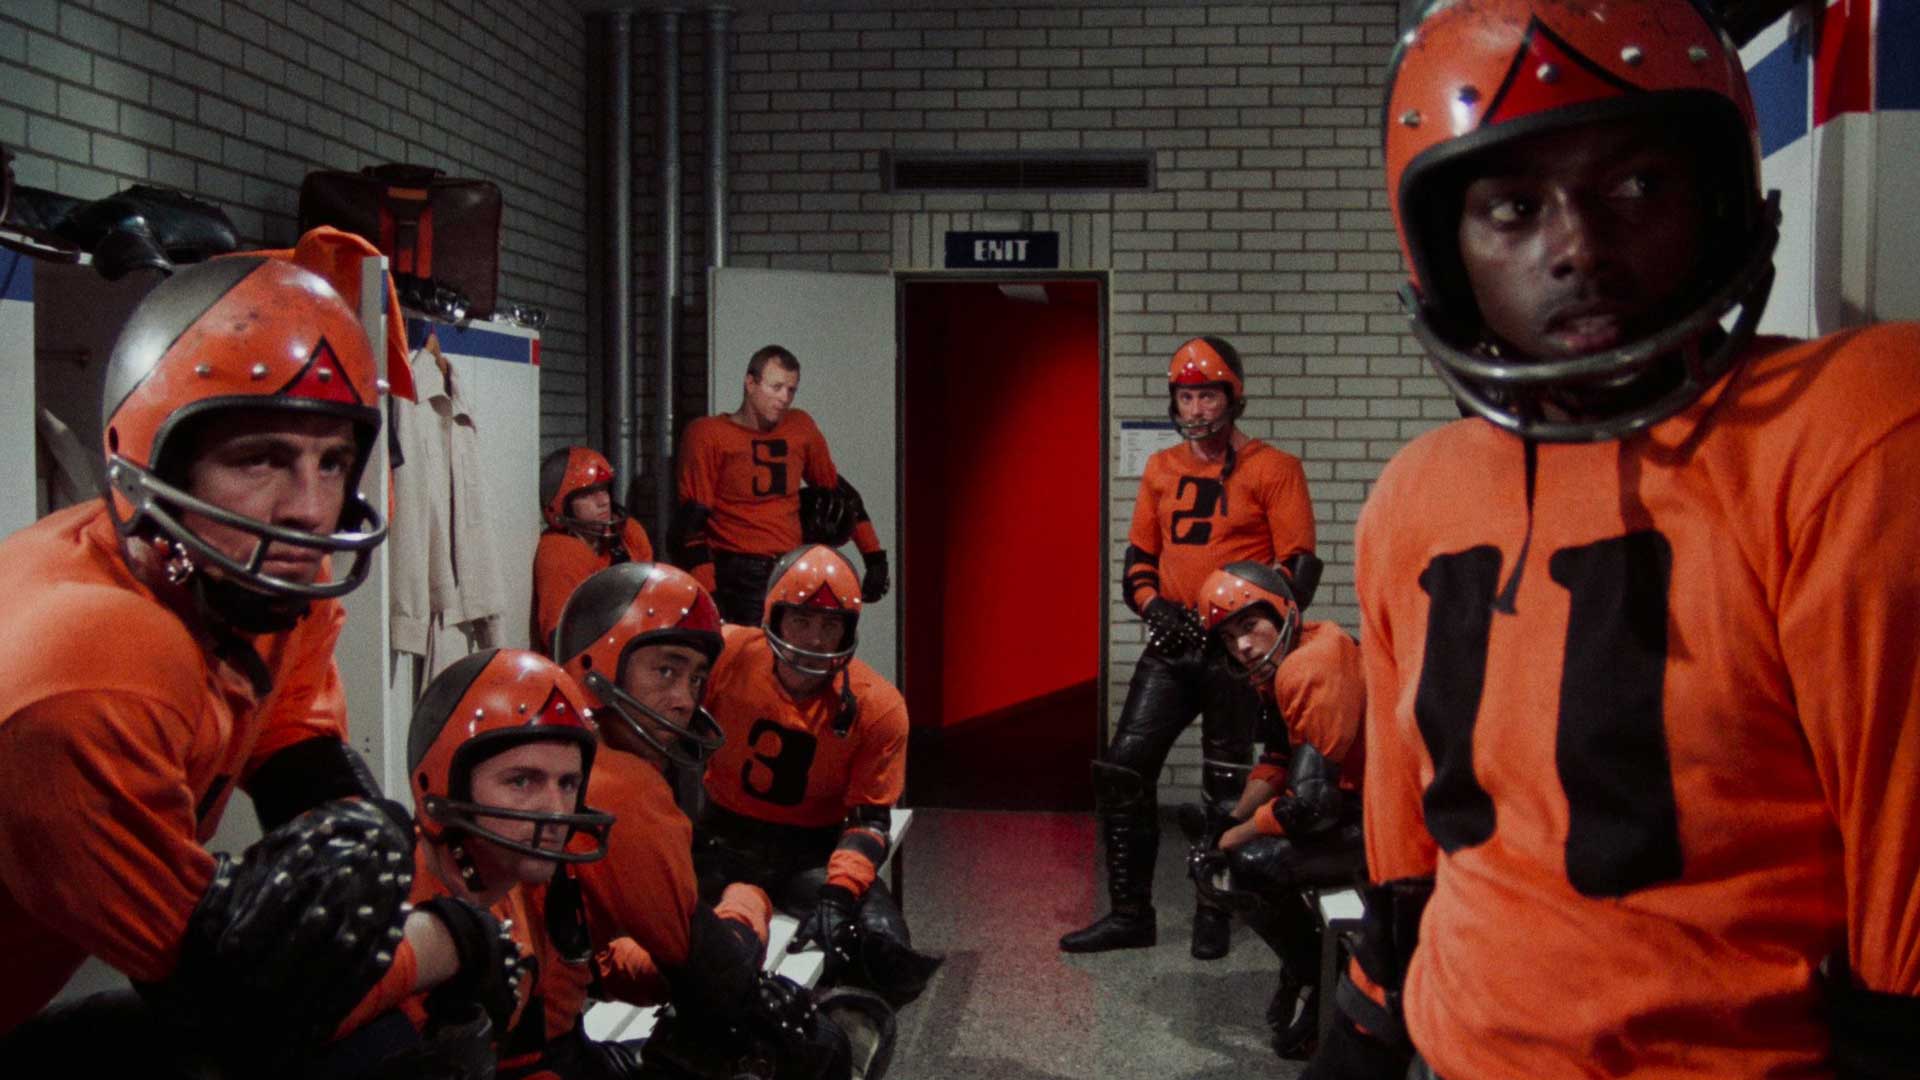 بازیکنان تیم با لباس نارنجی در فیلم علمی تخیلی Rollerball